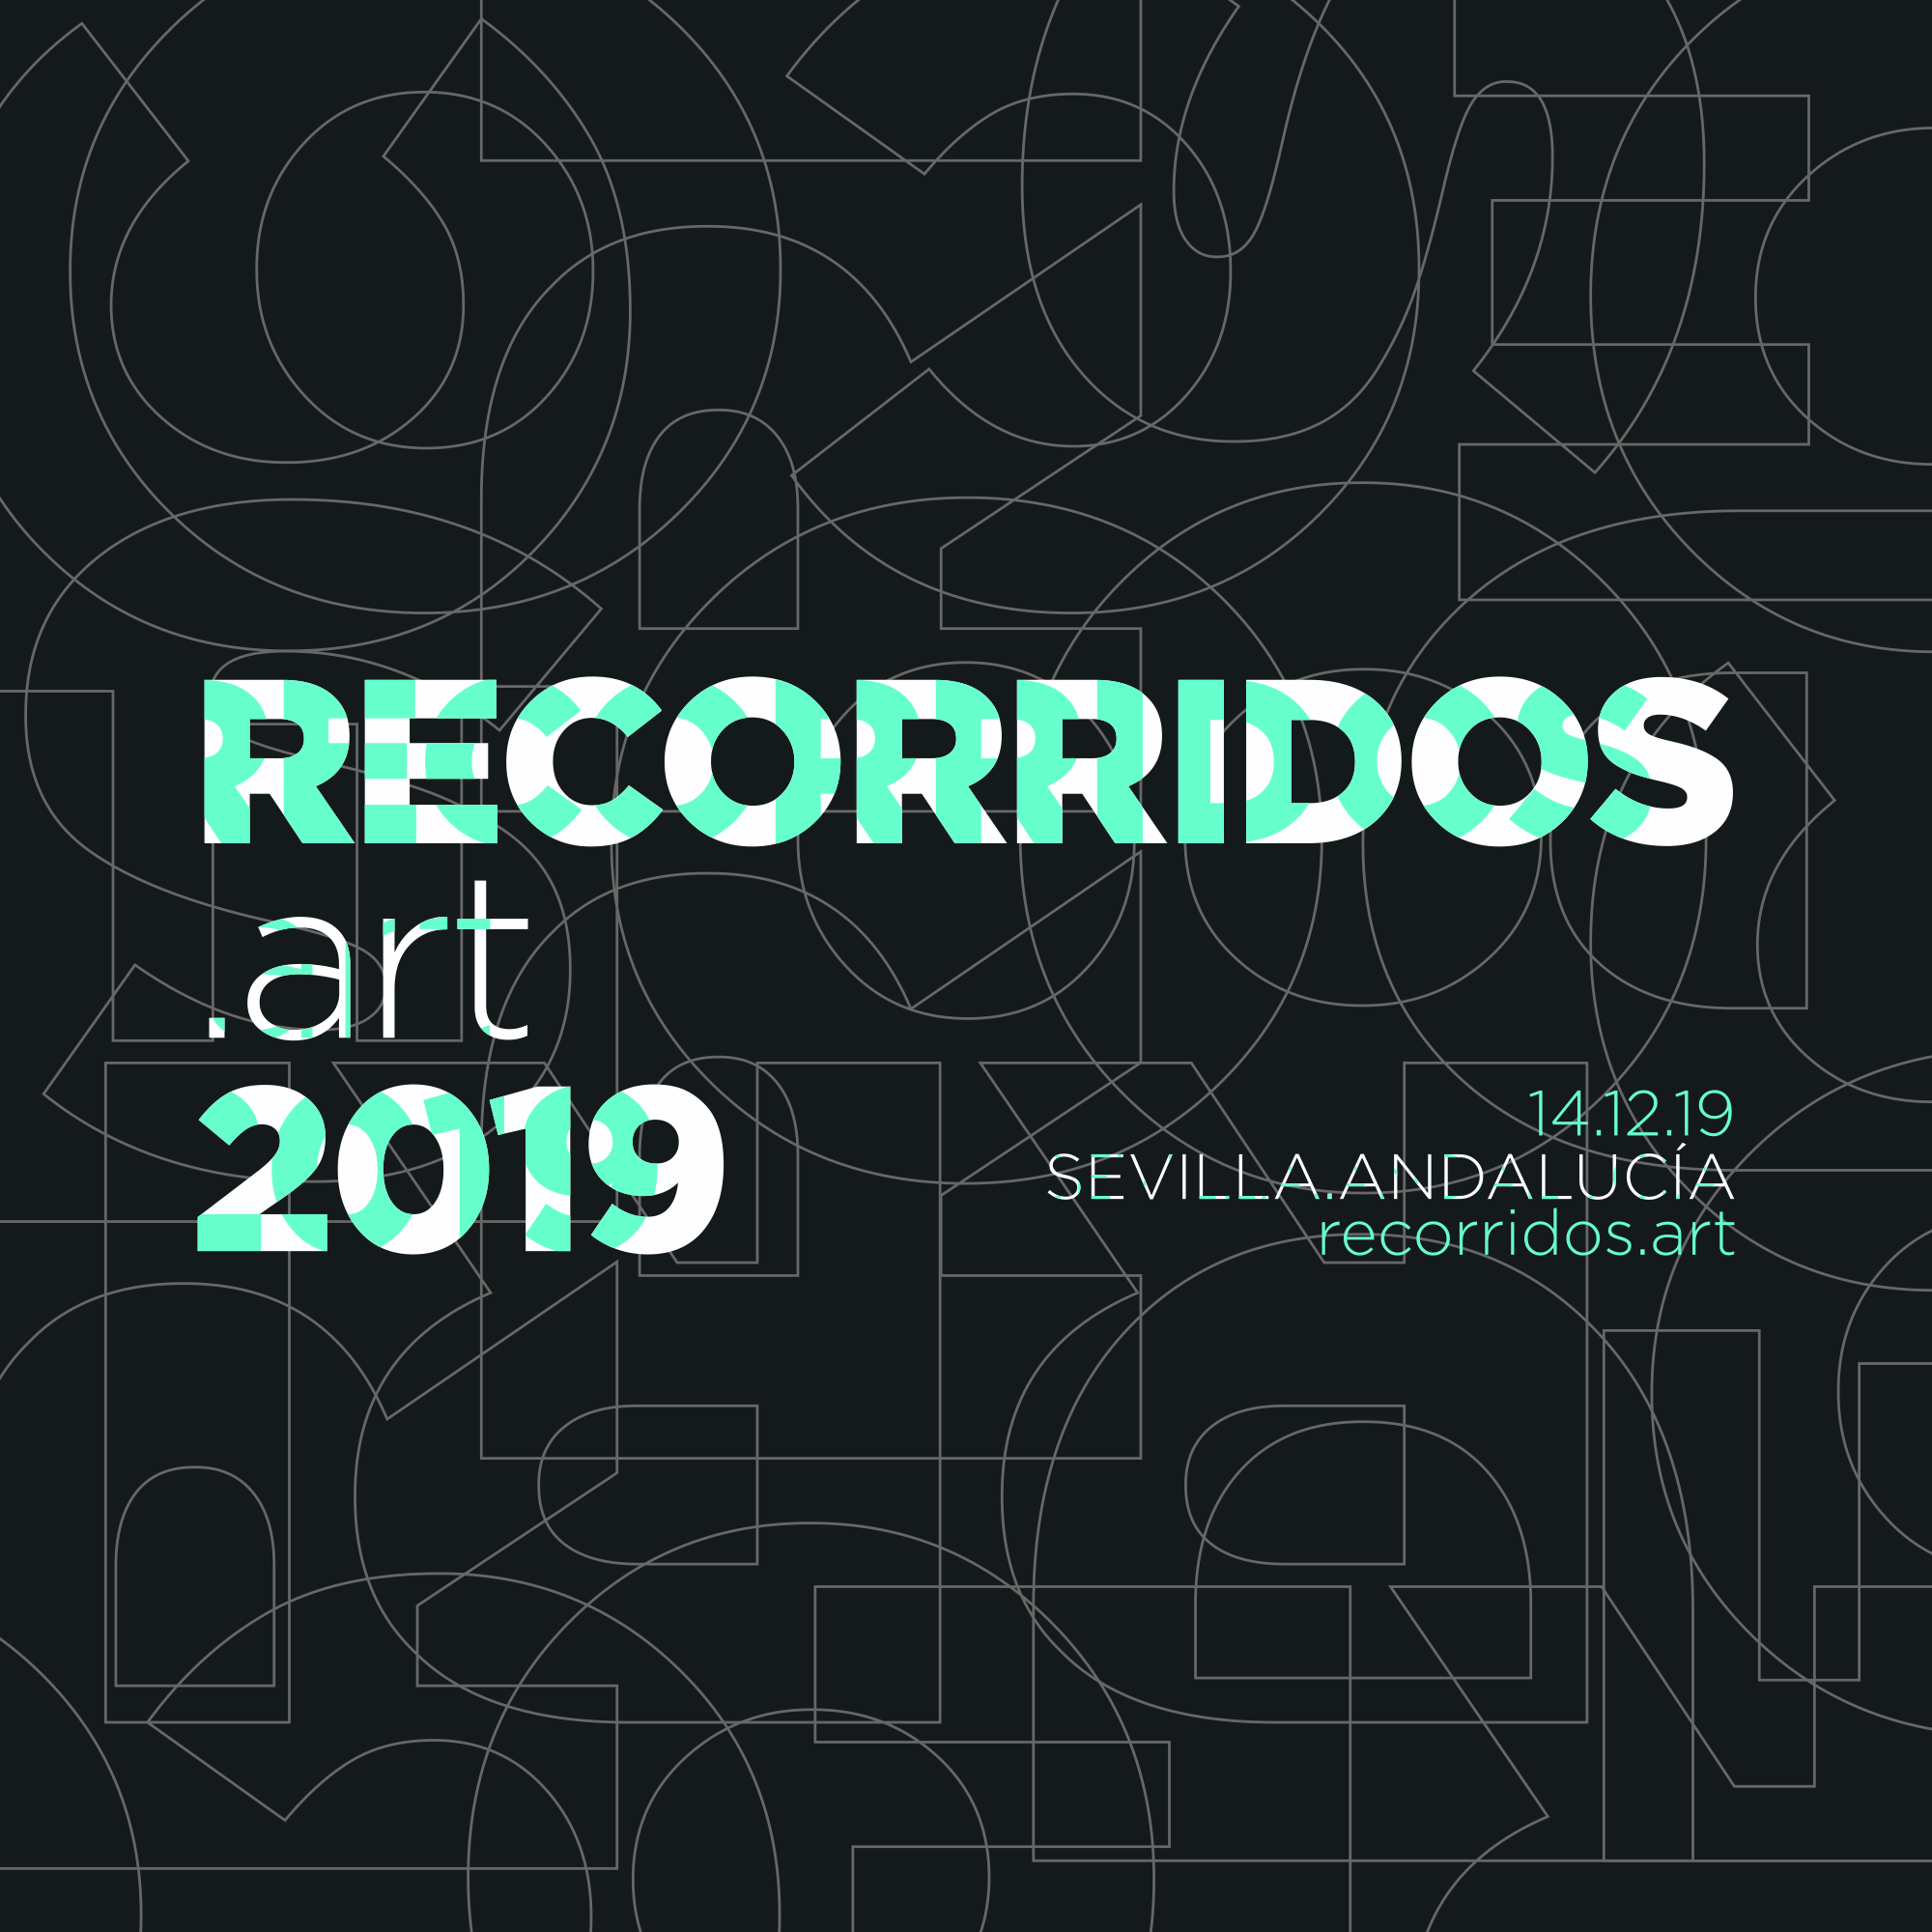 Recorridos.art 2019 - A